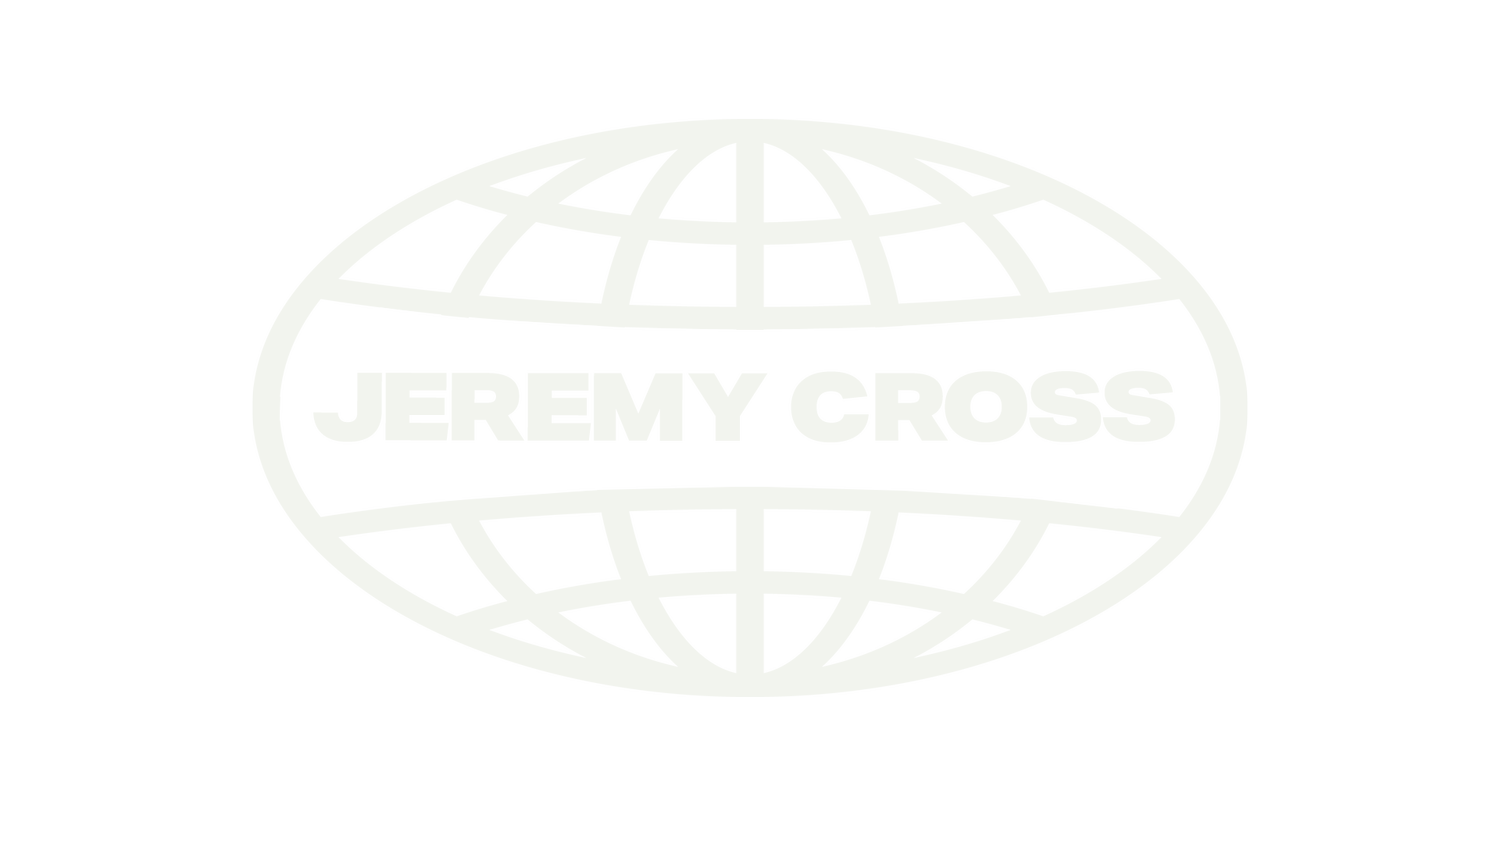 JEREMY CROSS